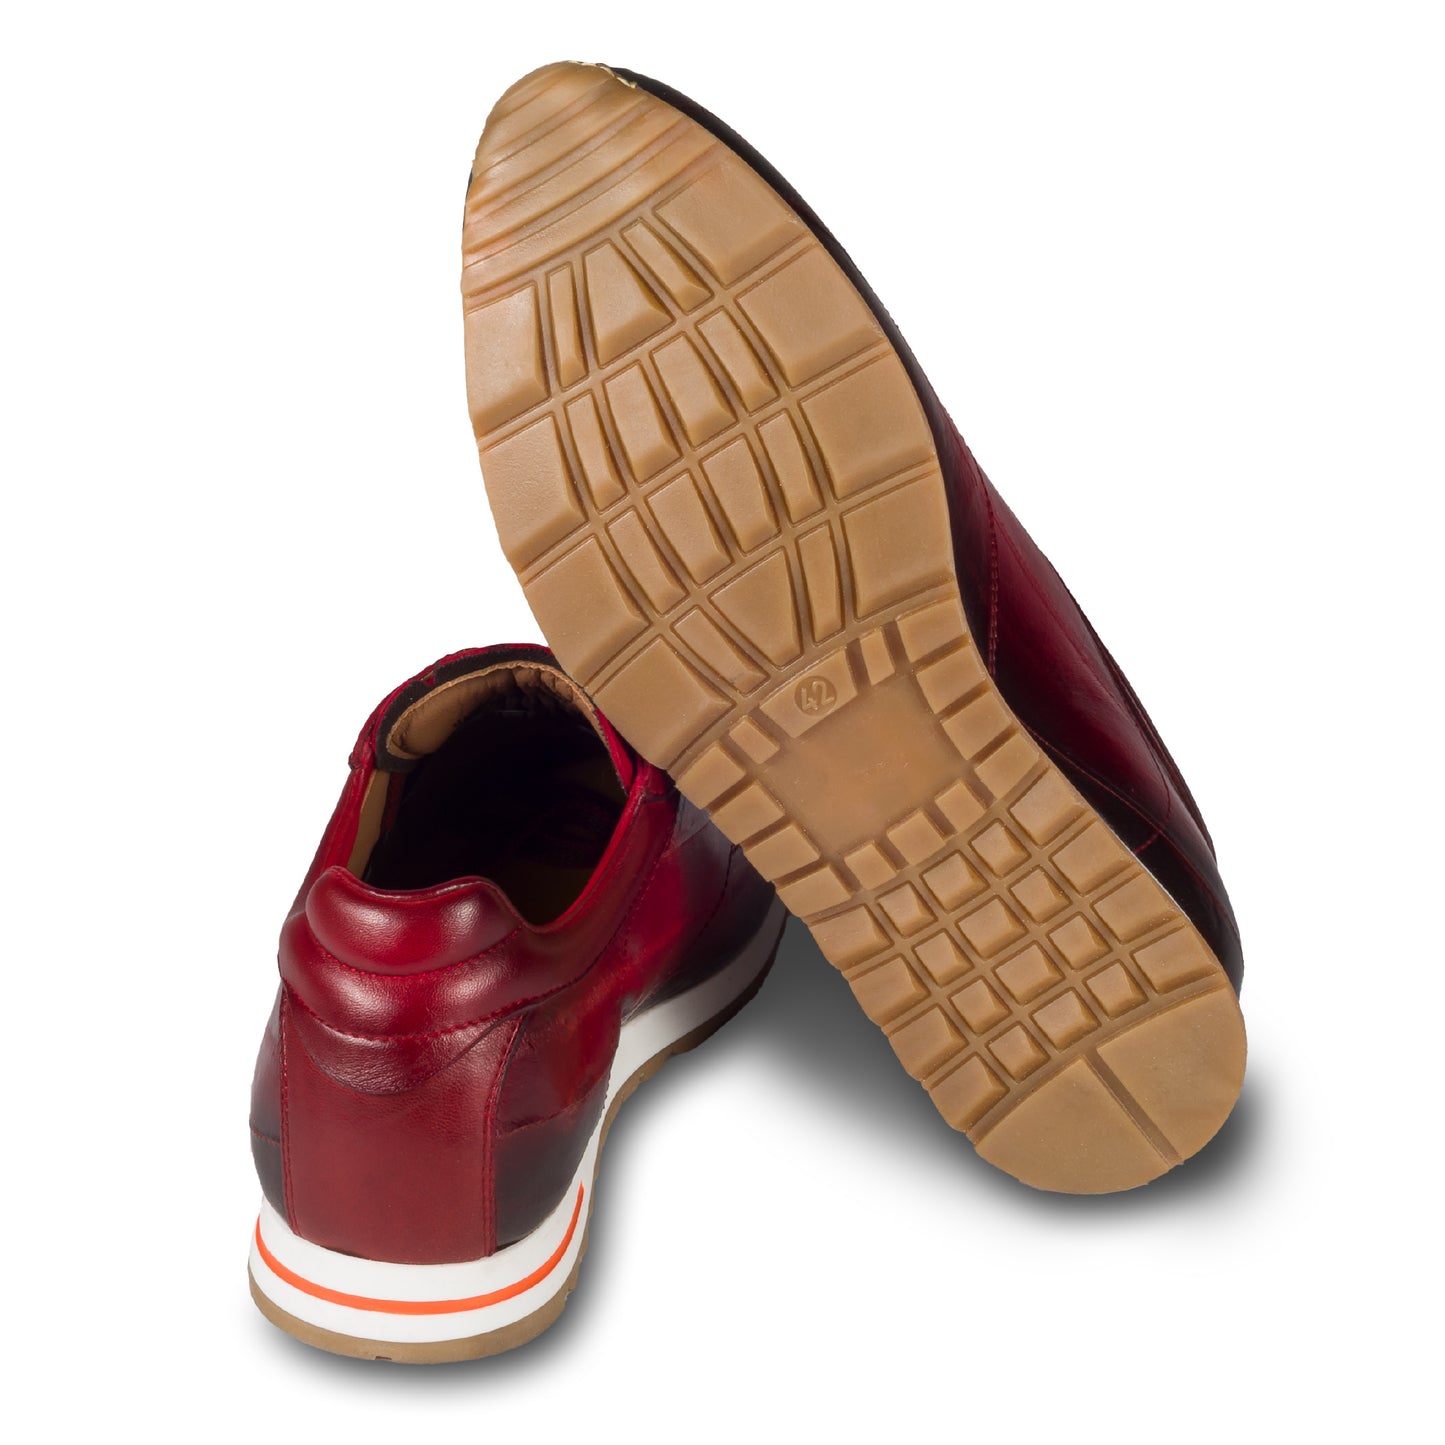 Lorenzi Herren Sneaker aus rotem Aal-Leder (Fischleder). Handgefertigt in Italien. Ansicht der Ferse und Sohlenunterseite. 